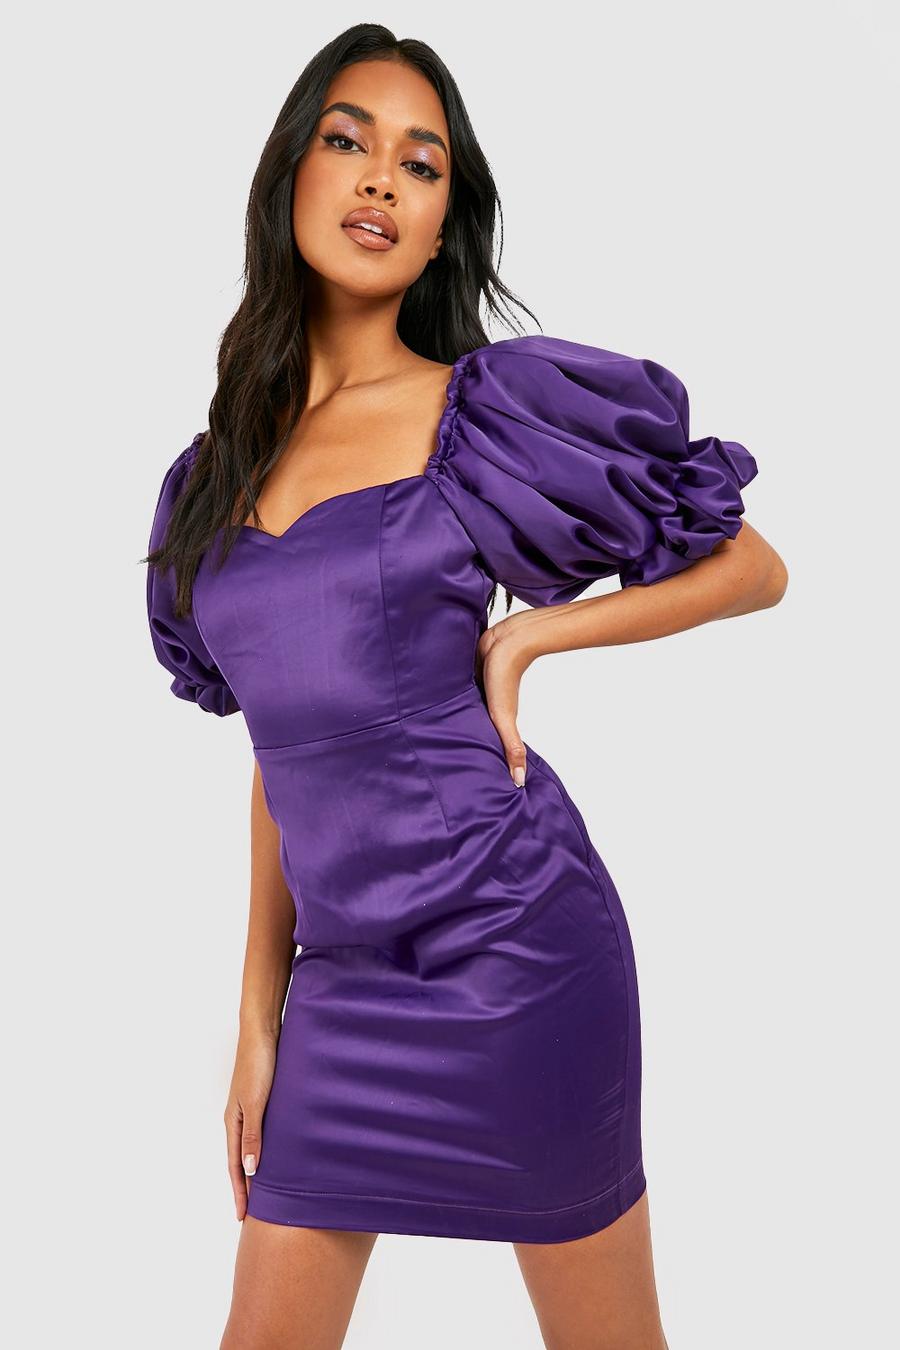 Jewel purple Satin Puff Sleeve Mini Dress image number 1